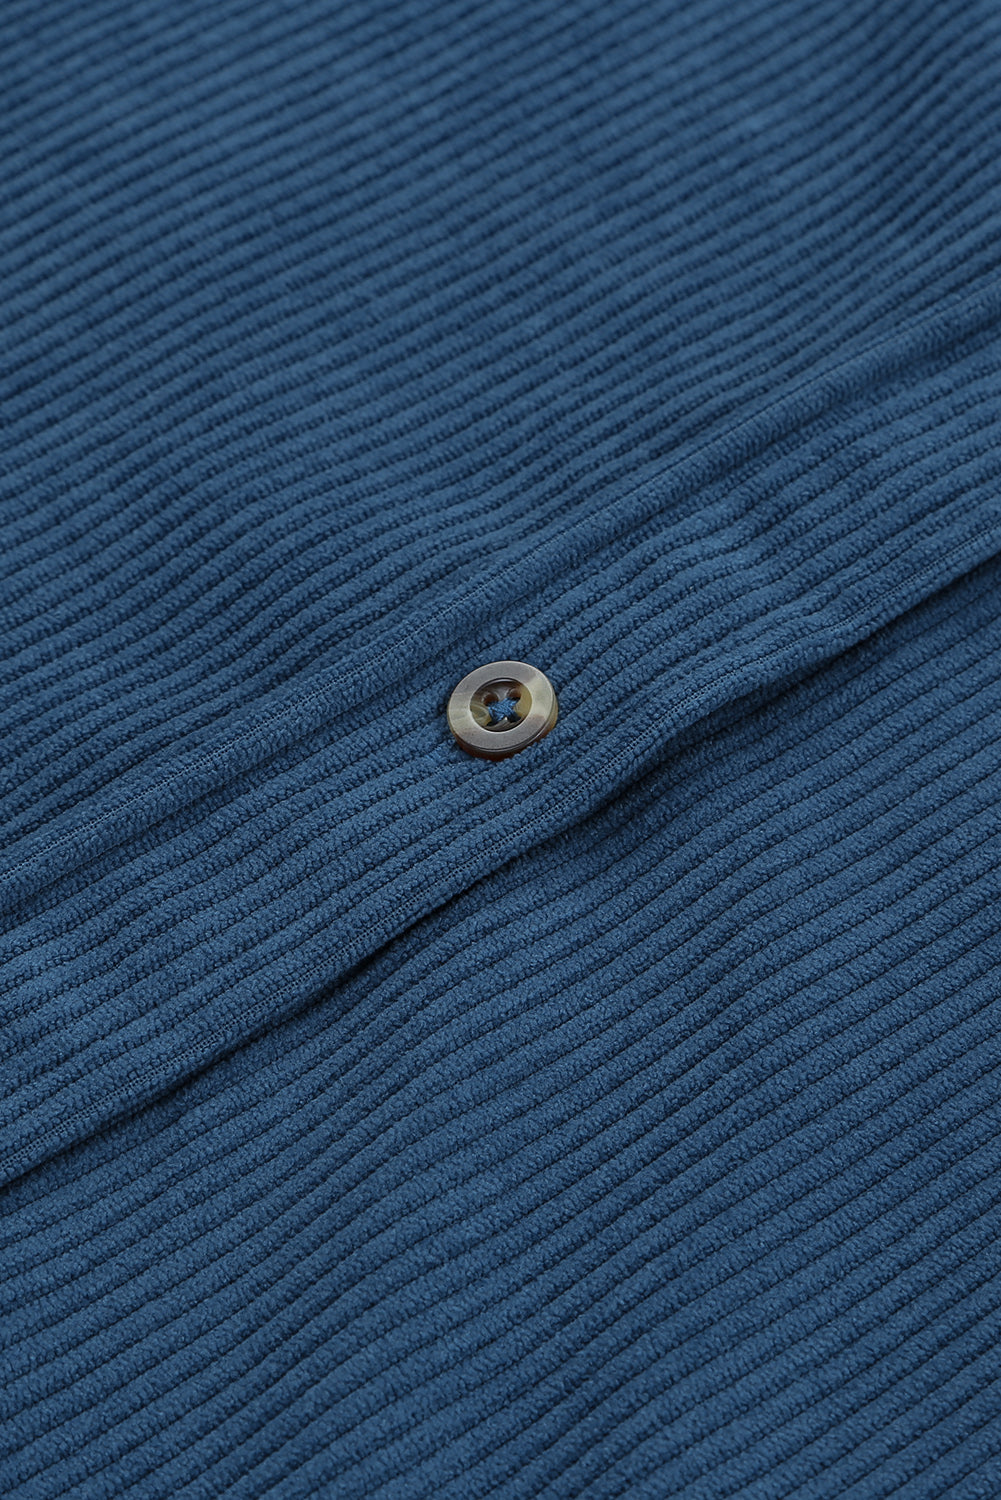 Modra srajca z žepi na gumbe